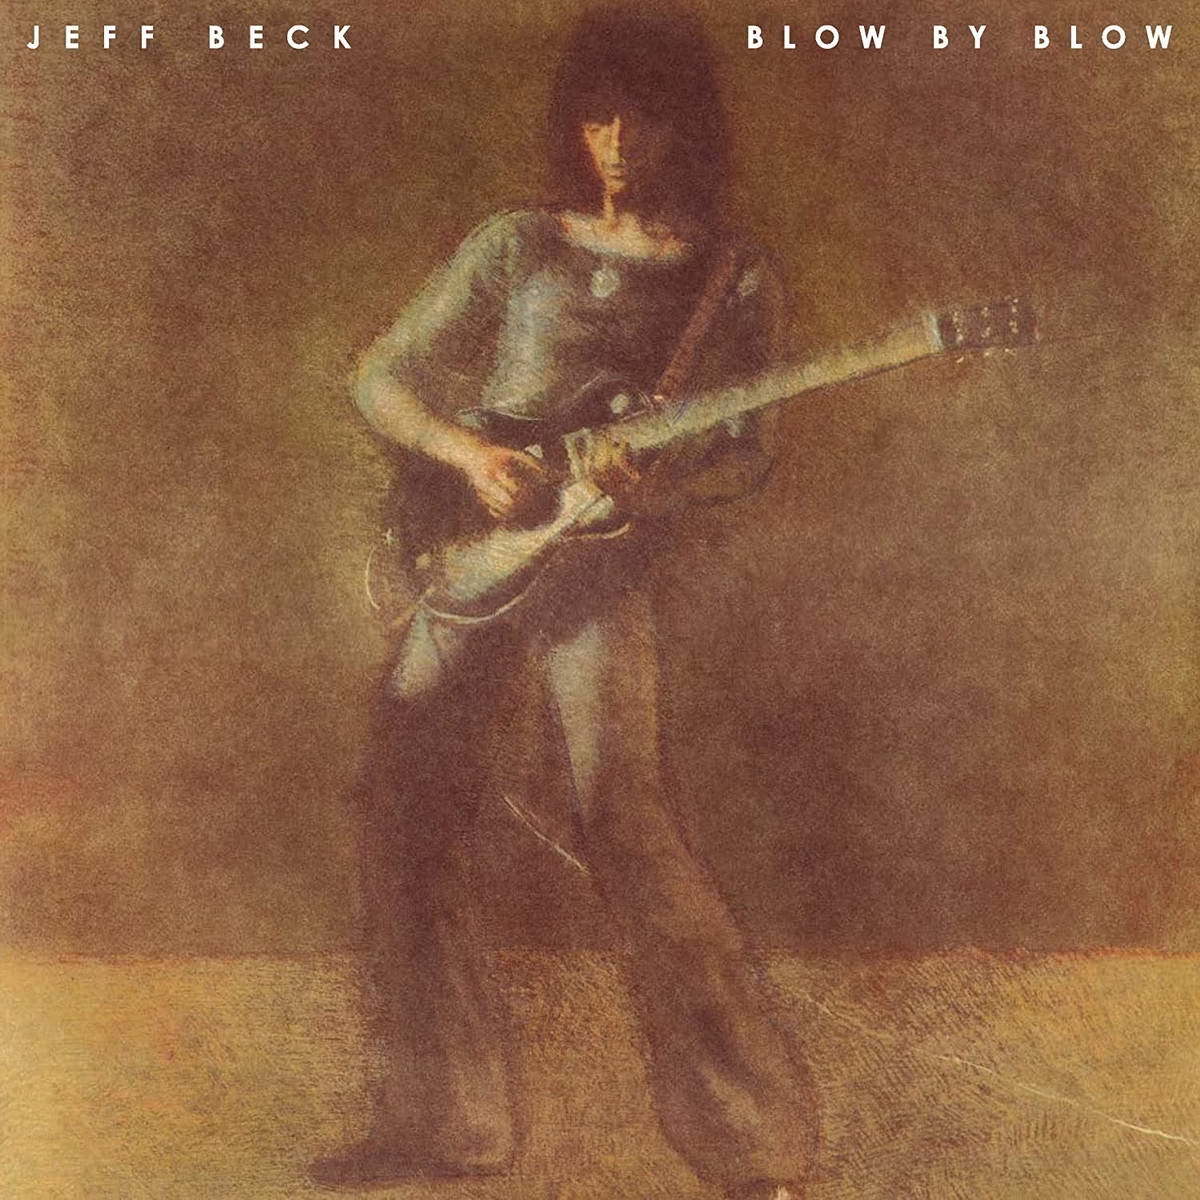 цена Виниловая пластинка Beck, Jeff, Blow By Blow (0886977455513)